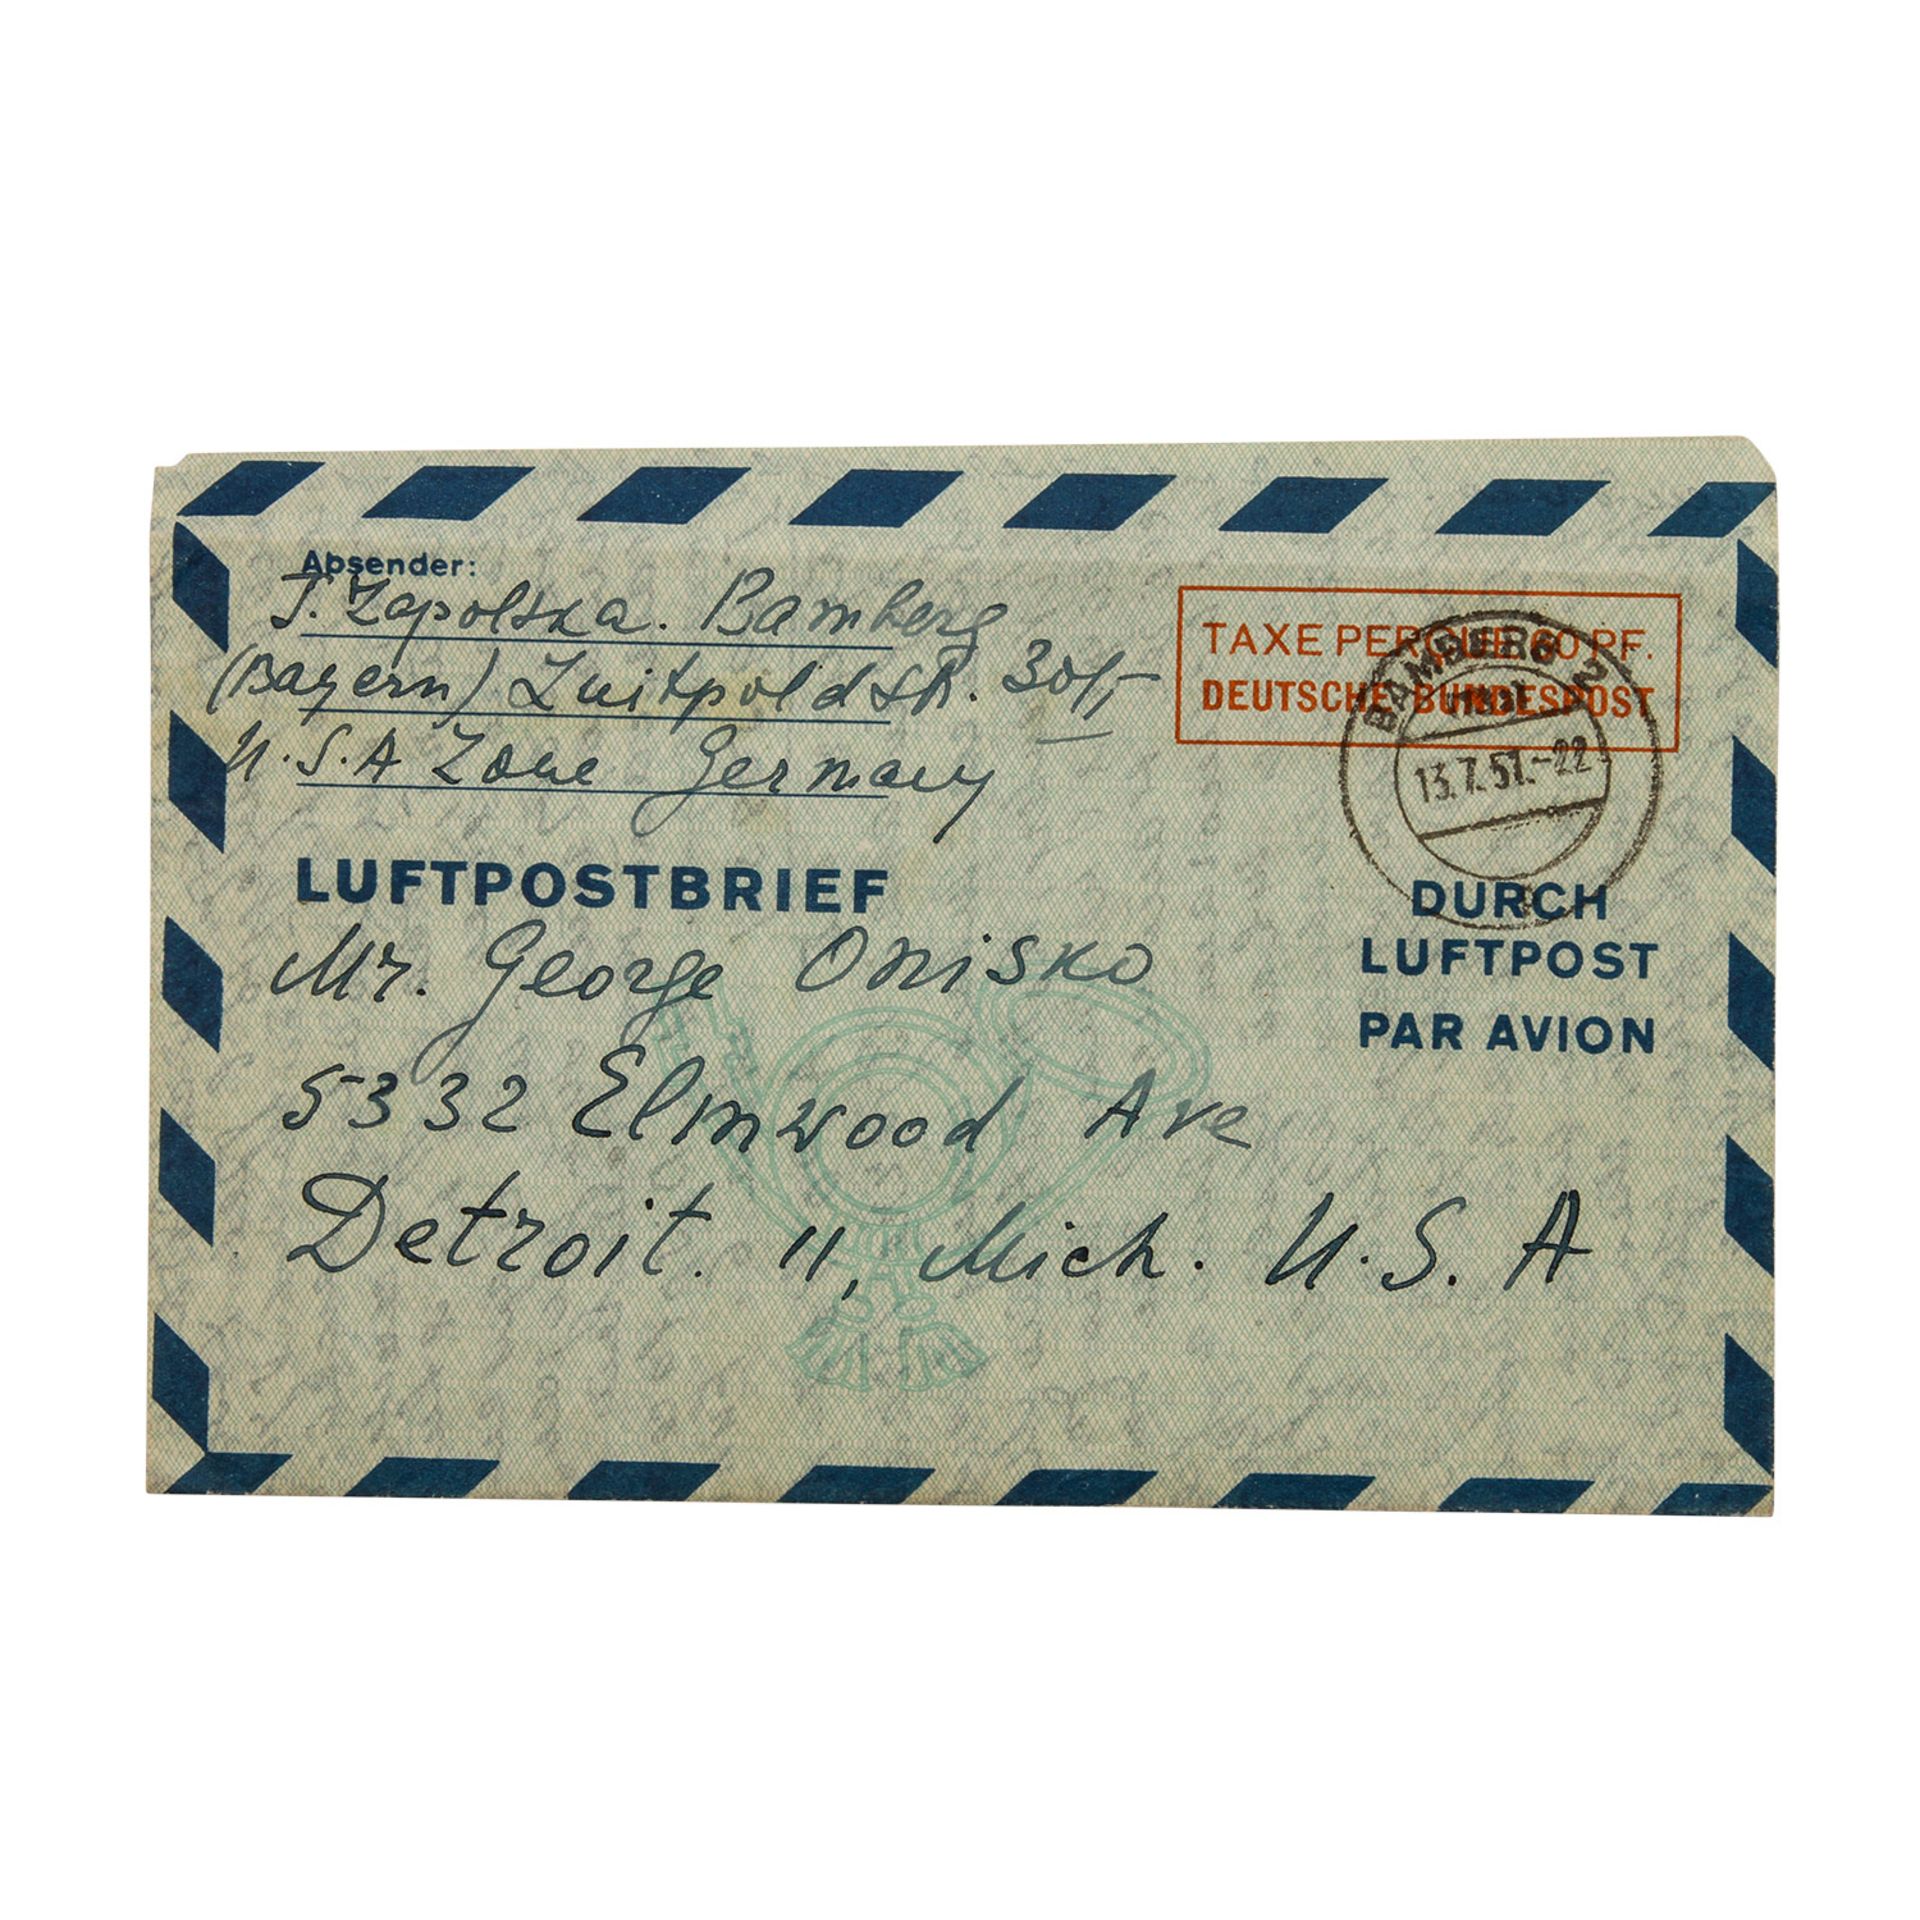 Bund - Luftpostfaltbrief 1950(Mi. Nr. LF5), gebraucht 1951 von "BAMBERG 2" nach Detroit / USA. Etwas